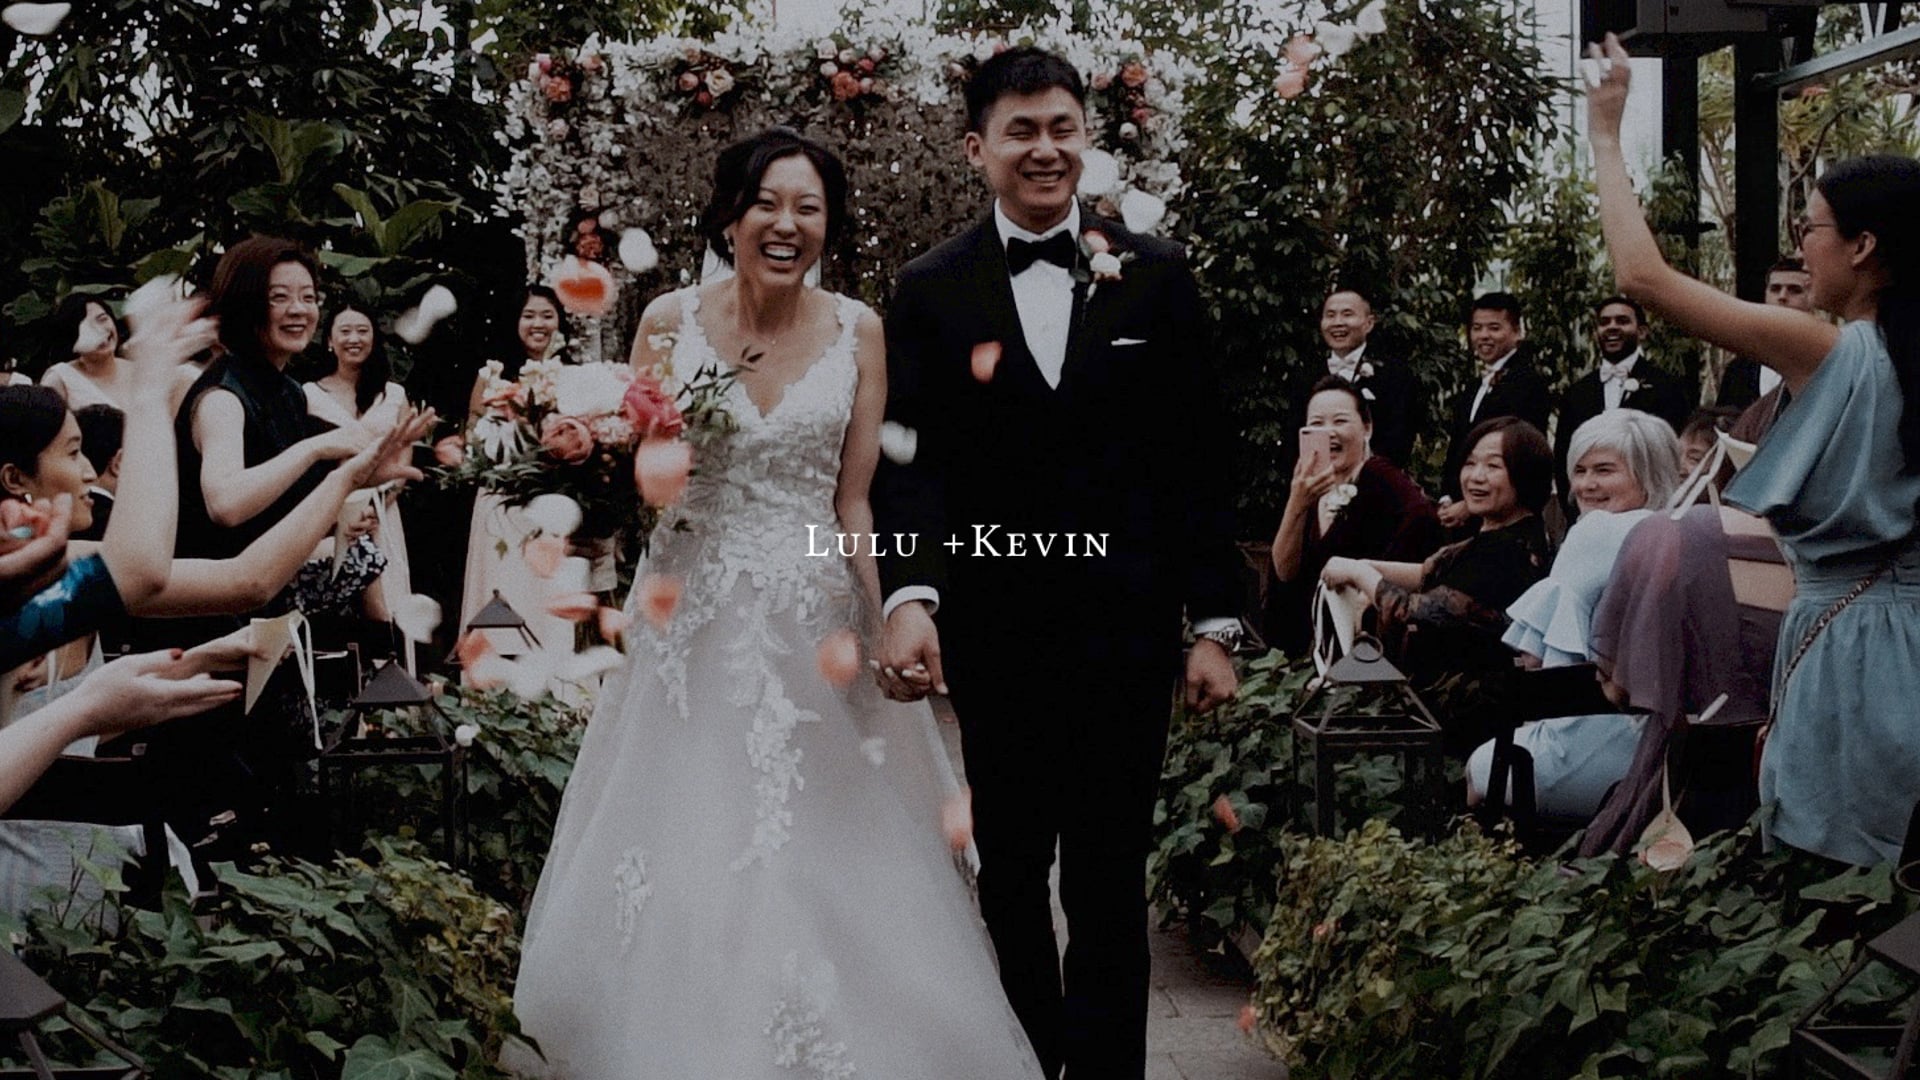 Lulu + Kevin | The Wedding Film | Detroit, MI